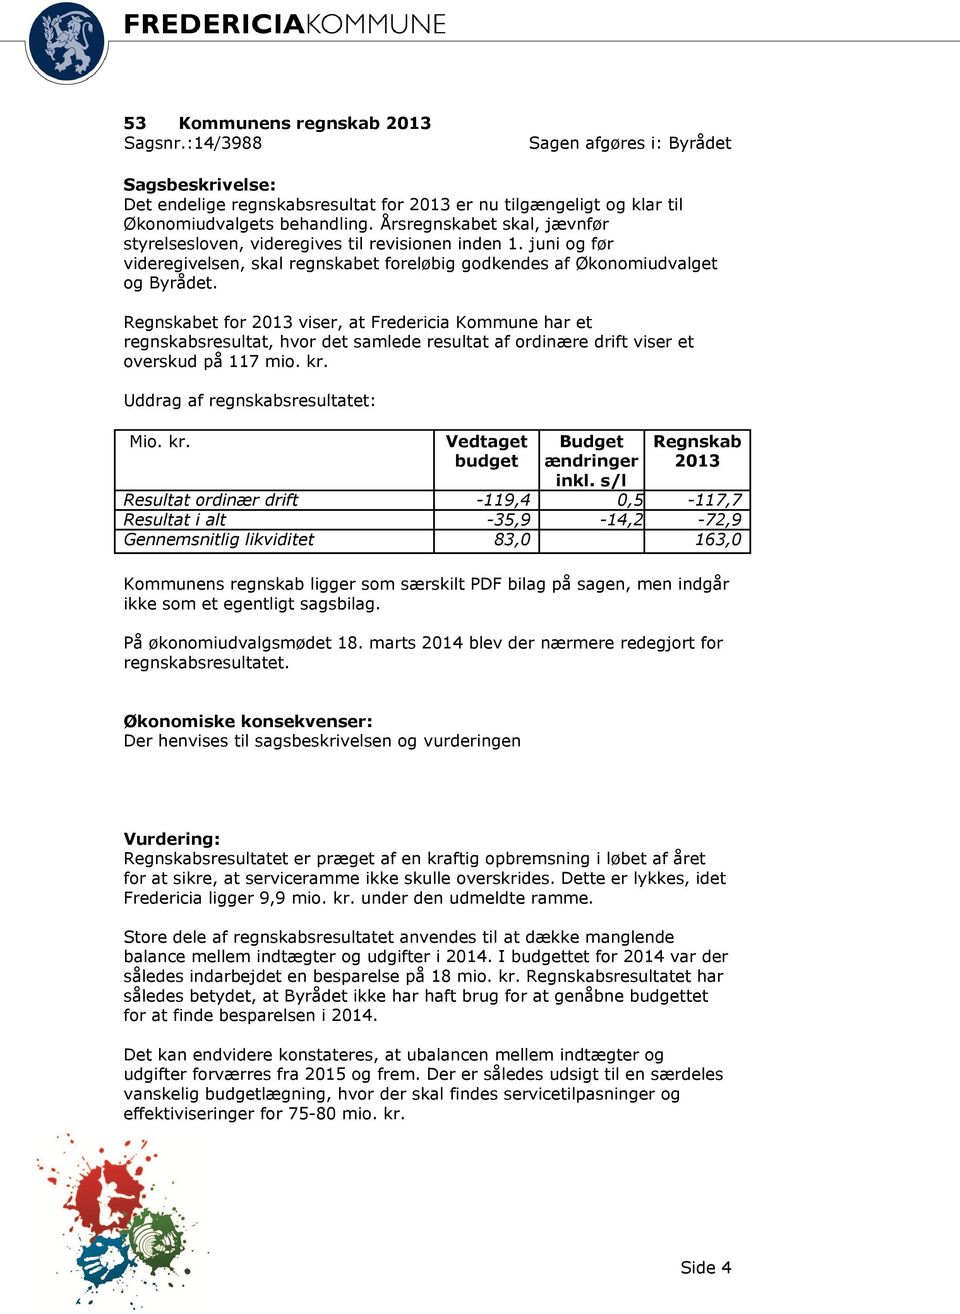 Regnskabet for 2013 viser, at Fredericia Kommune har et regnskabsresultat, hvor det samlede resultat af ordinære drift viser et overskud på 117 mio. kr. Uddrag af regnskabsresultatet: Mio. kr. Vedtaget budget Budget ændringer inkl.